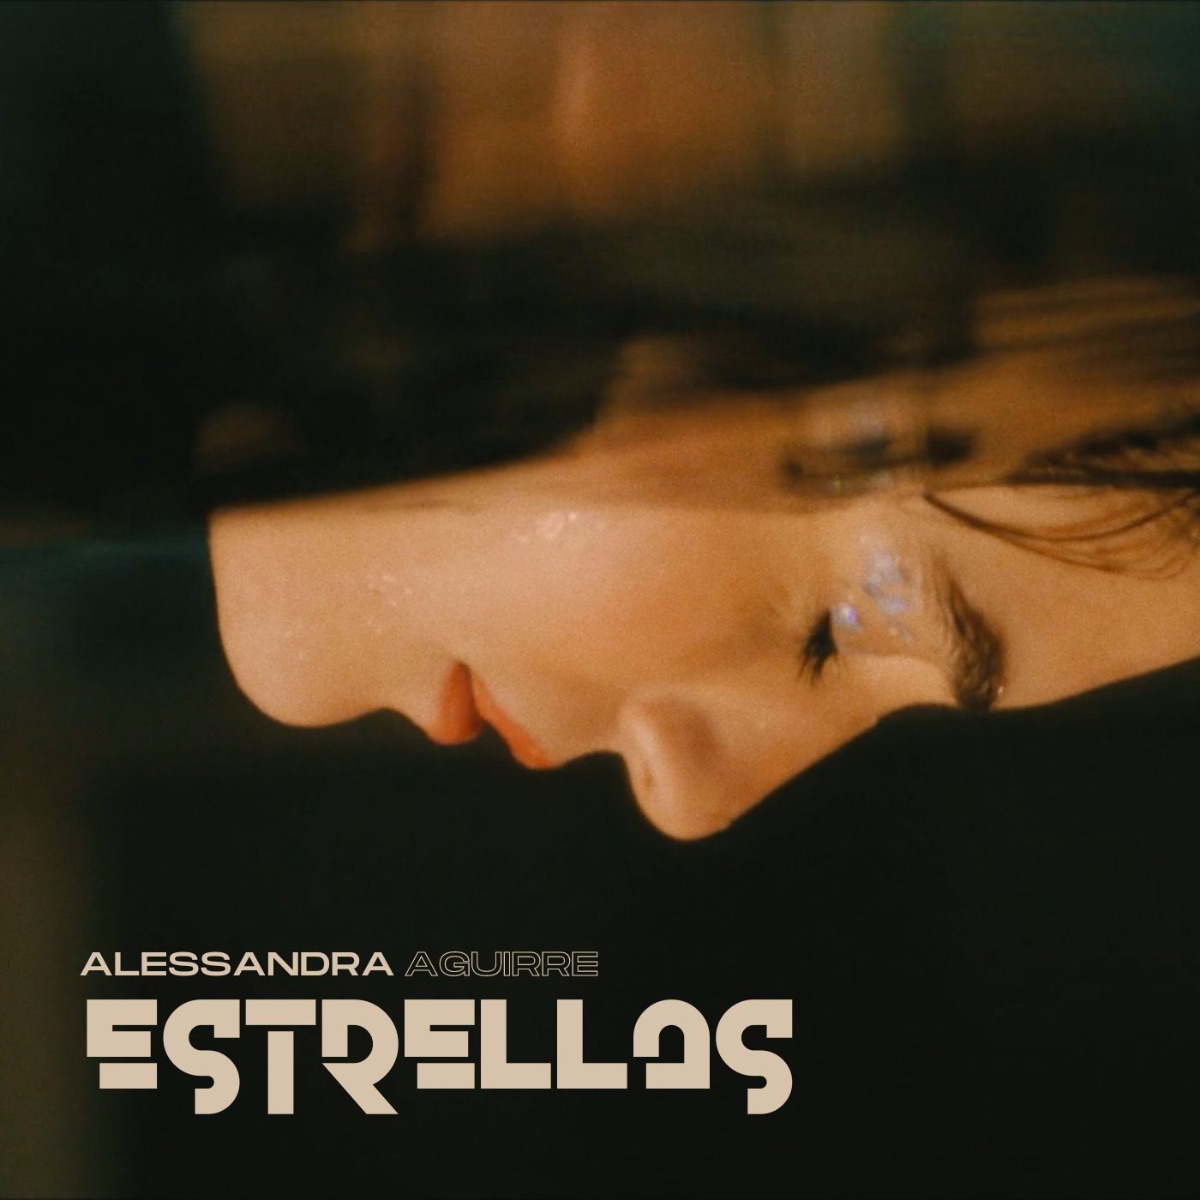 ALESSANDRA AGUIRRE lanza nuevo sencillo “Estrellas”